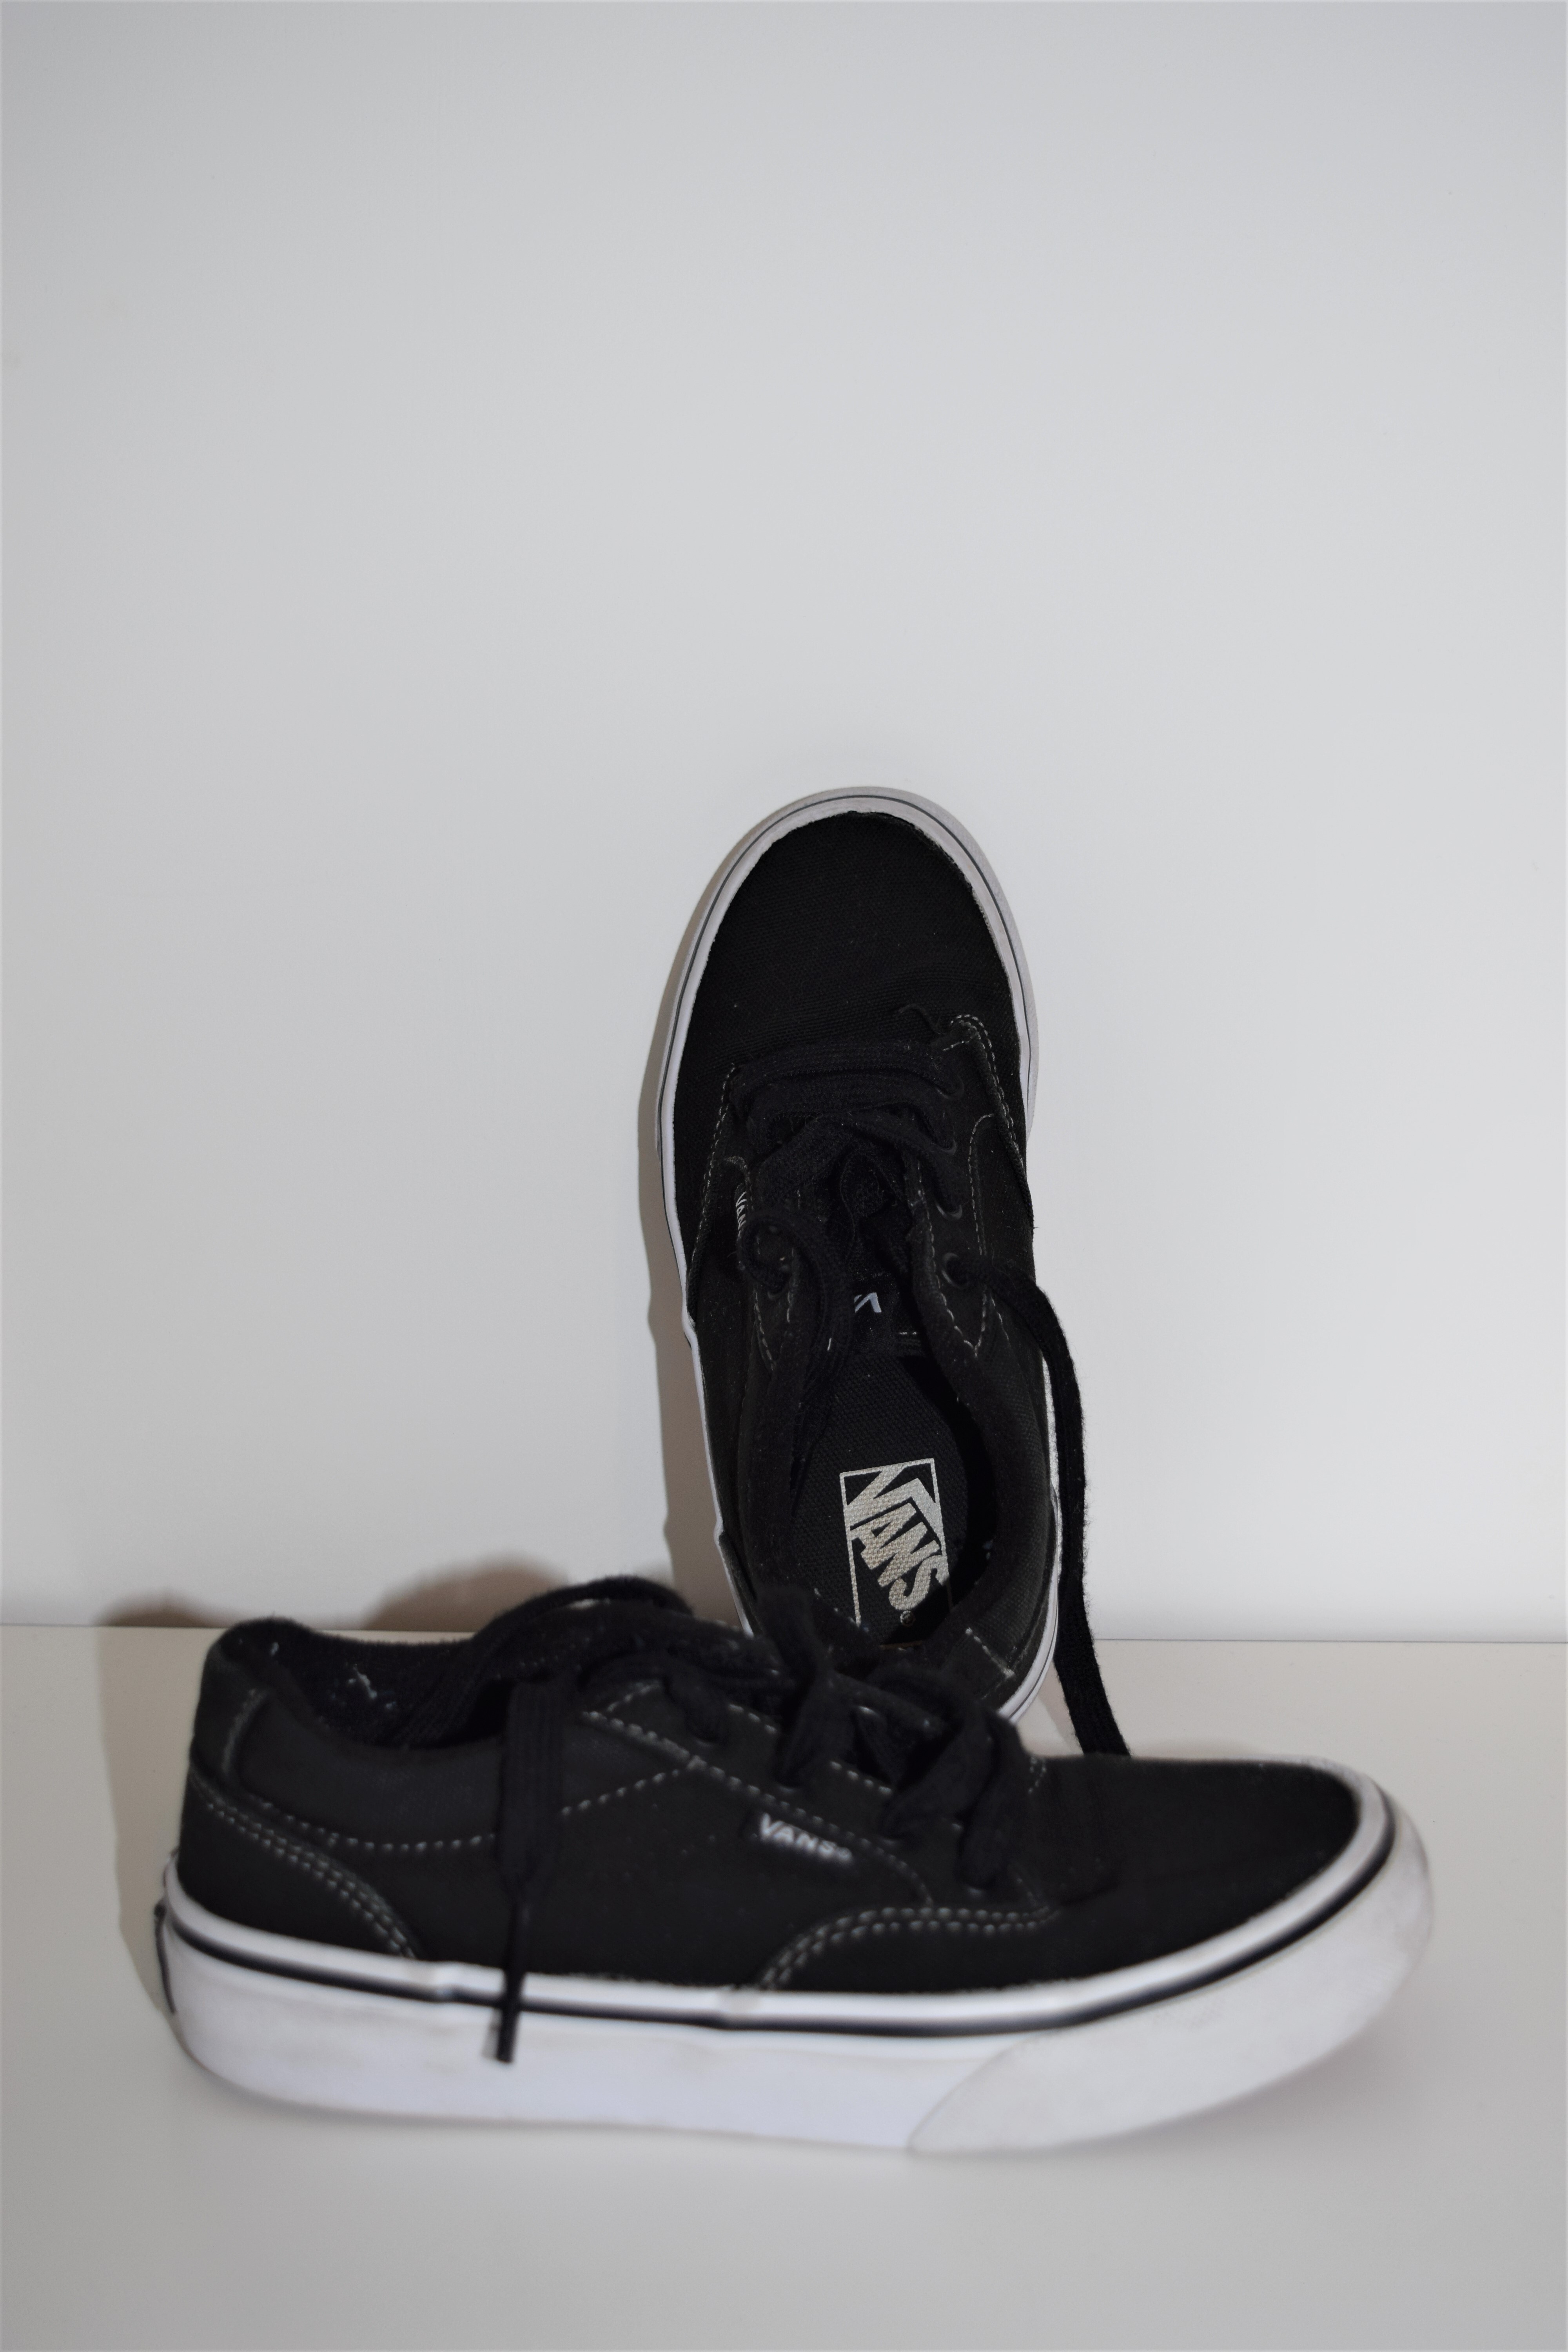 Sneakers, Vans, 31 